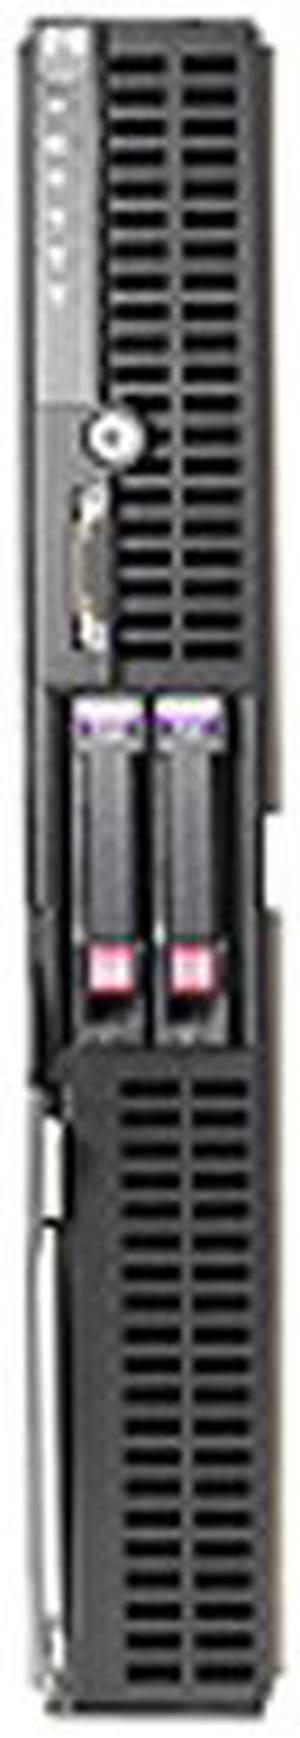 HP ProLiant BL685c Blade Dual AMD Opteron 8220 2.8 GHz 4 GB DDR2 Servers 2 x AMD Opteron Model 8220 (2.8 GHz) 4 GB (4 x 1 GB) 438818-B21